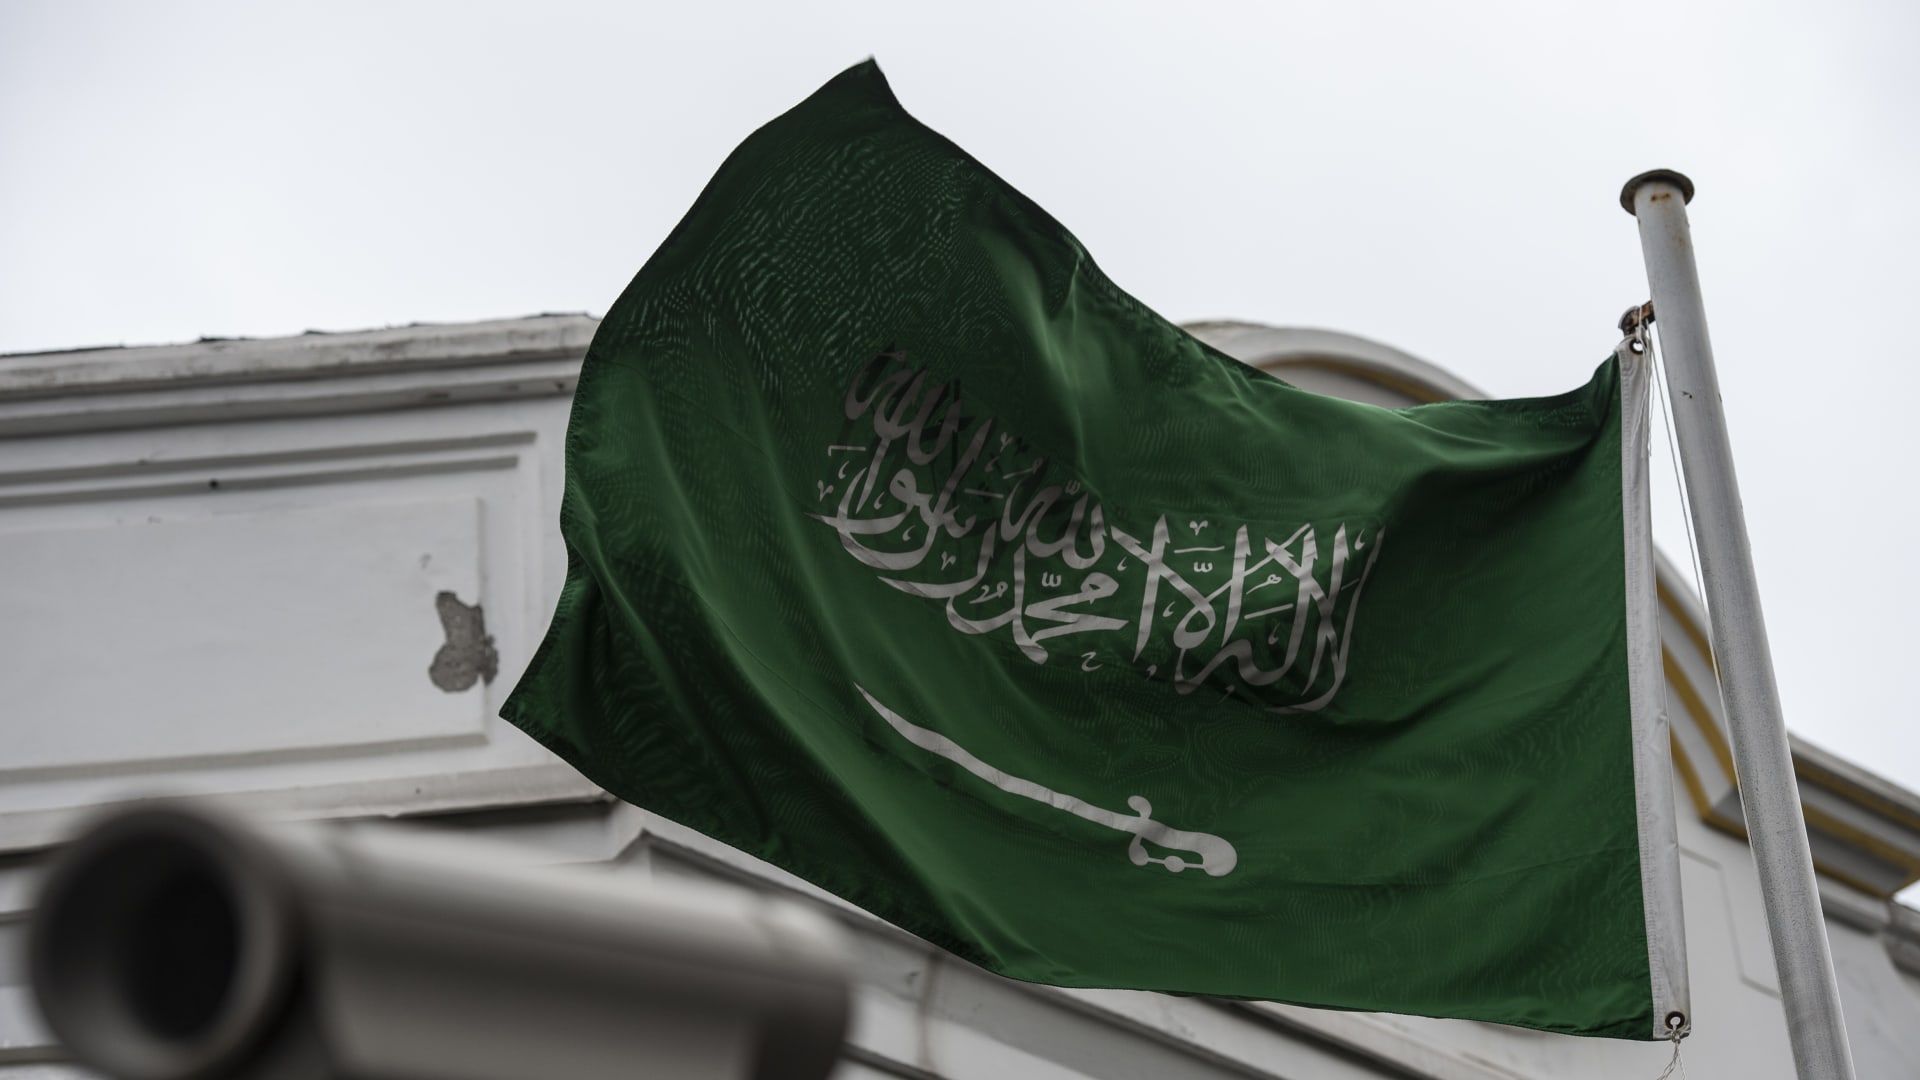 مقتل سعودي في الضاحية الجنوبية لبيروت.. وسفير الرياض يعيد نشر تغريدة تكشف أنه "معارض" ويعلق على الحادثة